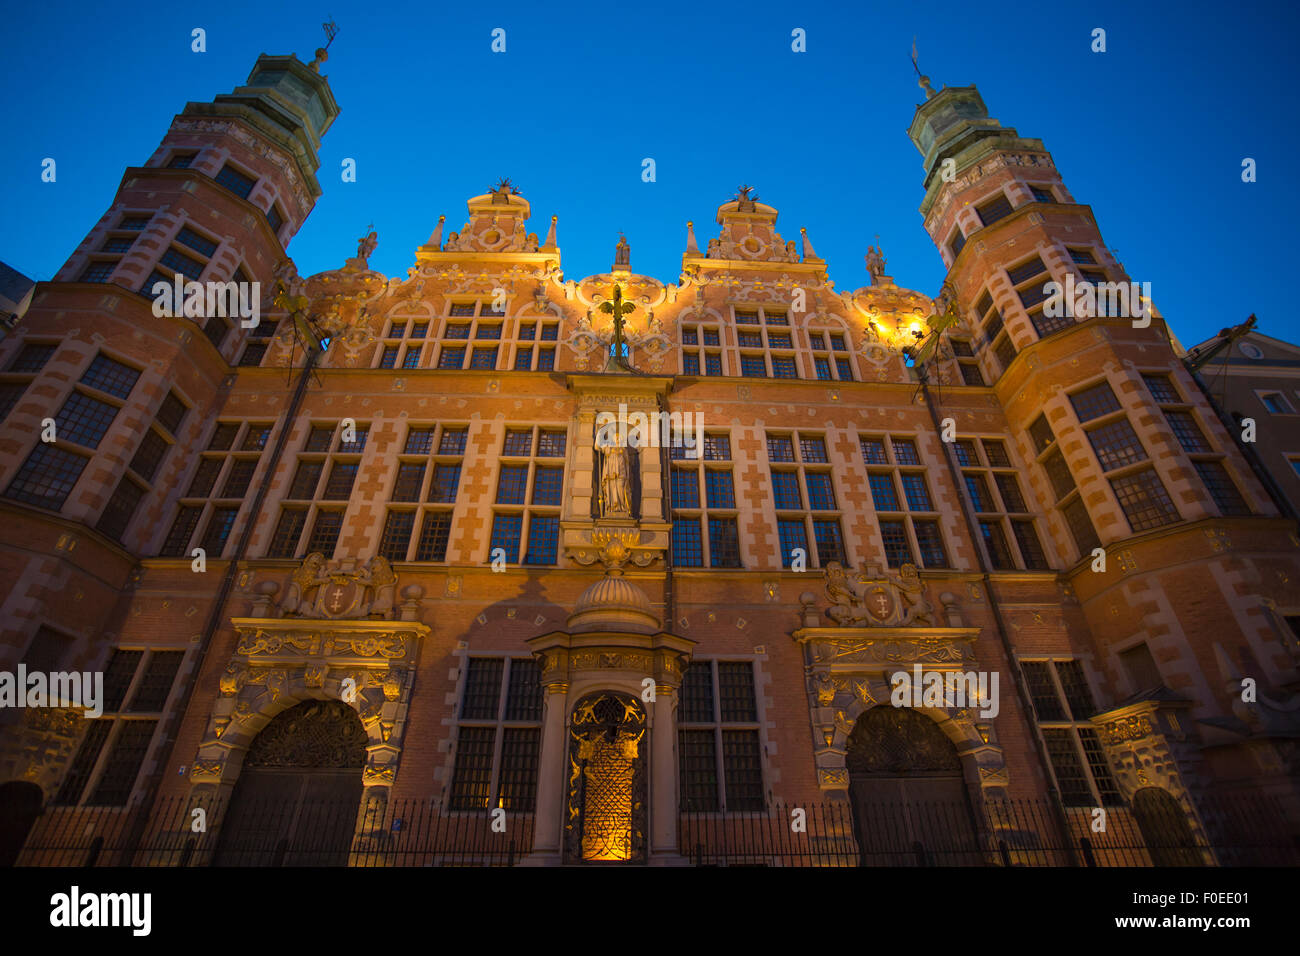 Fotos de noche de la ciudad histórica de Gdansk, en Polonia, con la arquitectura antigua, el arte y el patrimonio cultural. Foto de stock